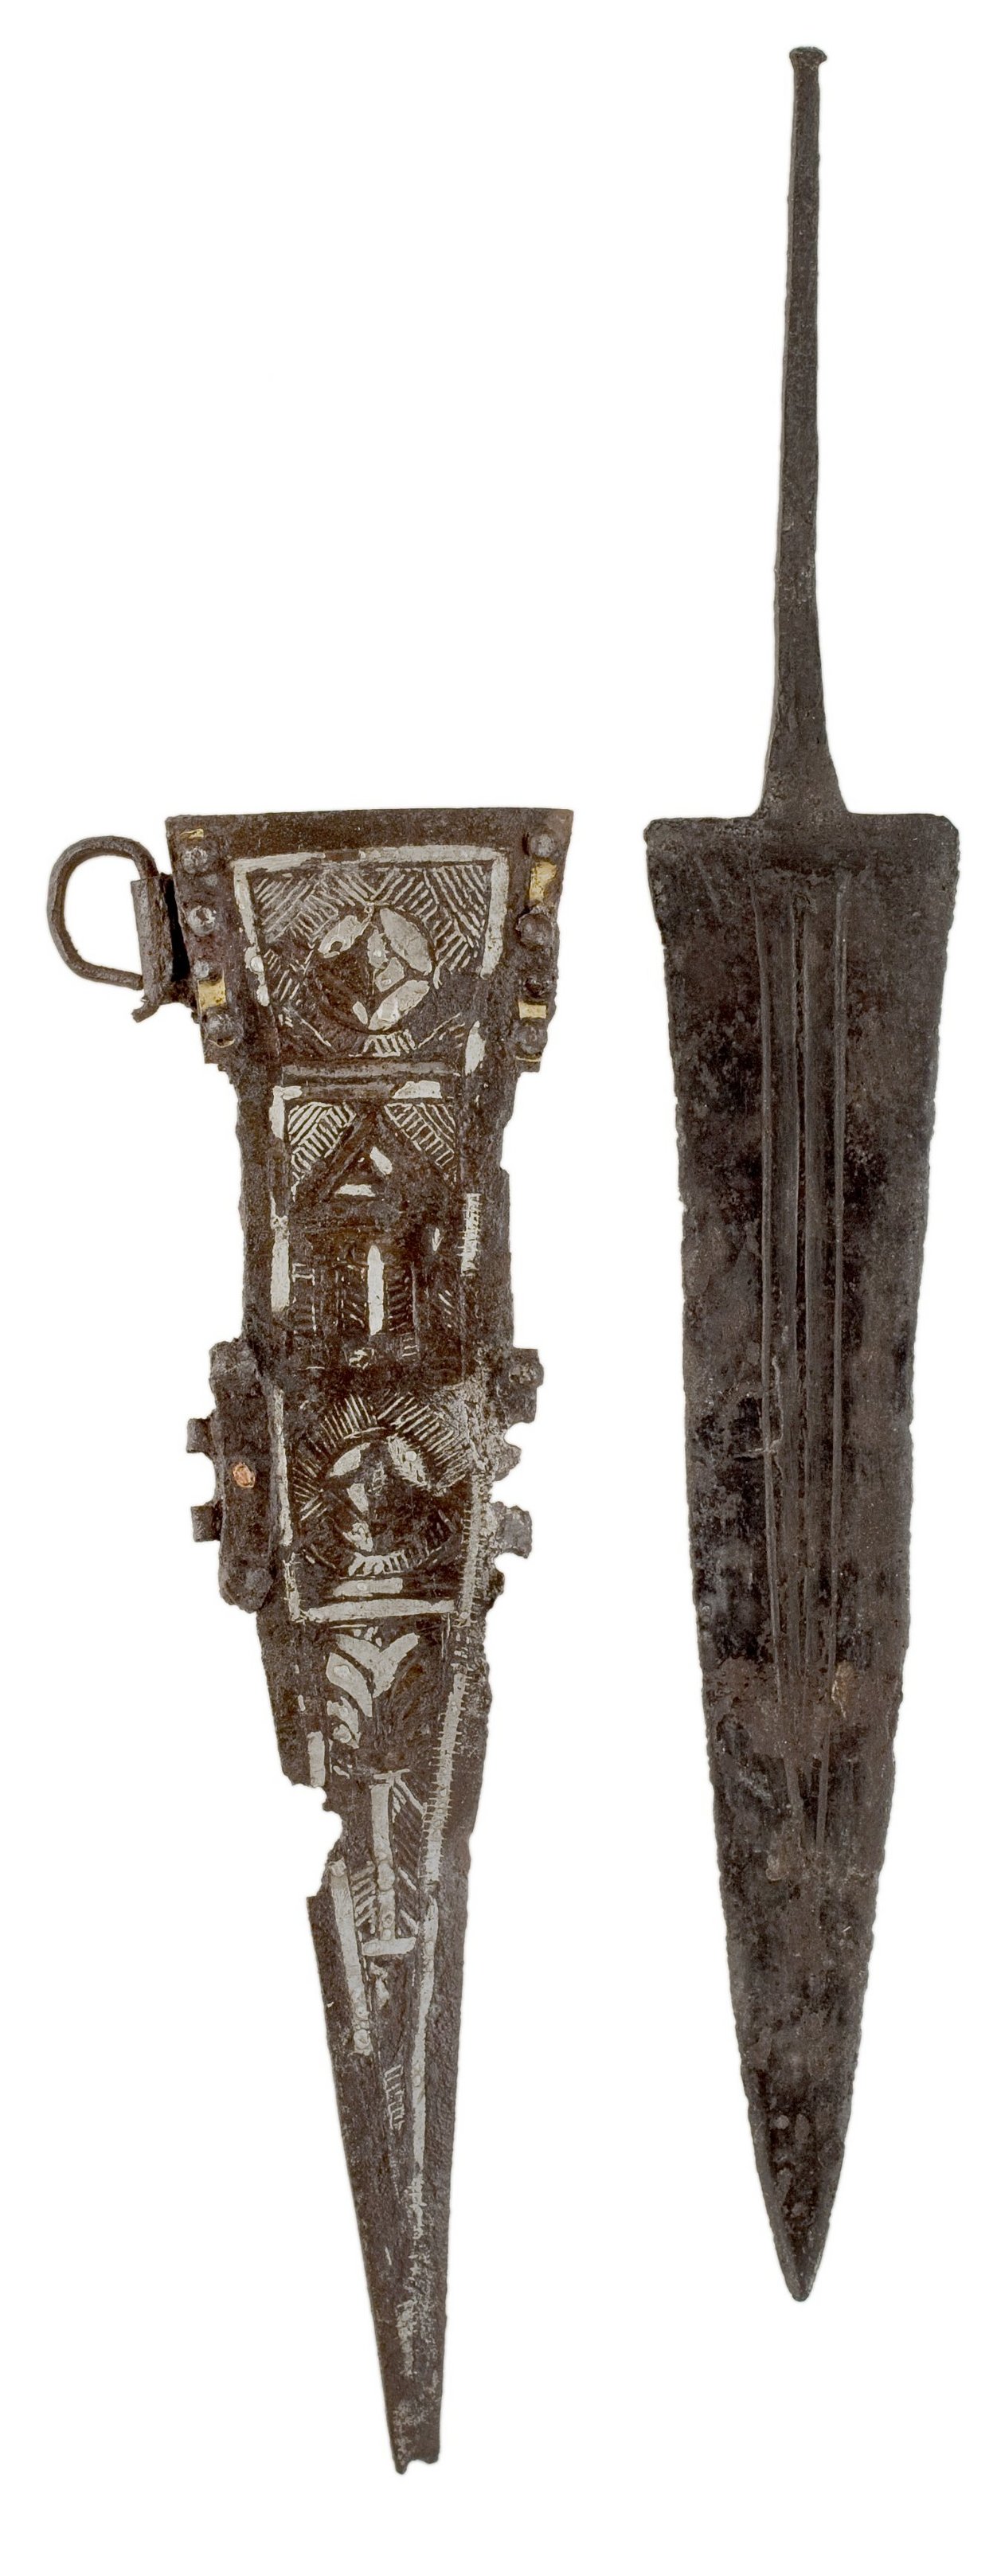 Vor einem weissen Hintergrund ist ein Dolch mit seiner dazugehörige Schwertscheide abgebildet. Die Verzierung der Schwertscheide weist silberne Elemente auf. 